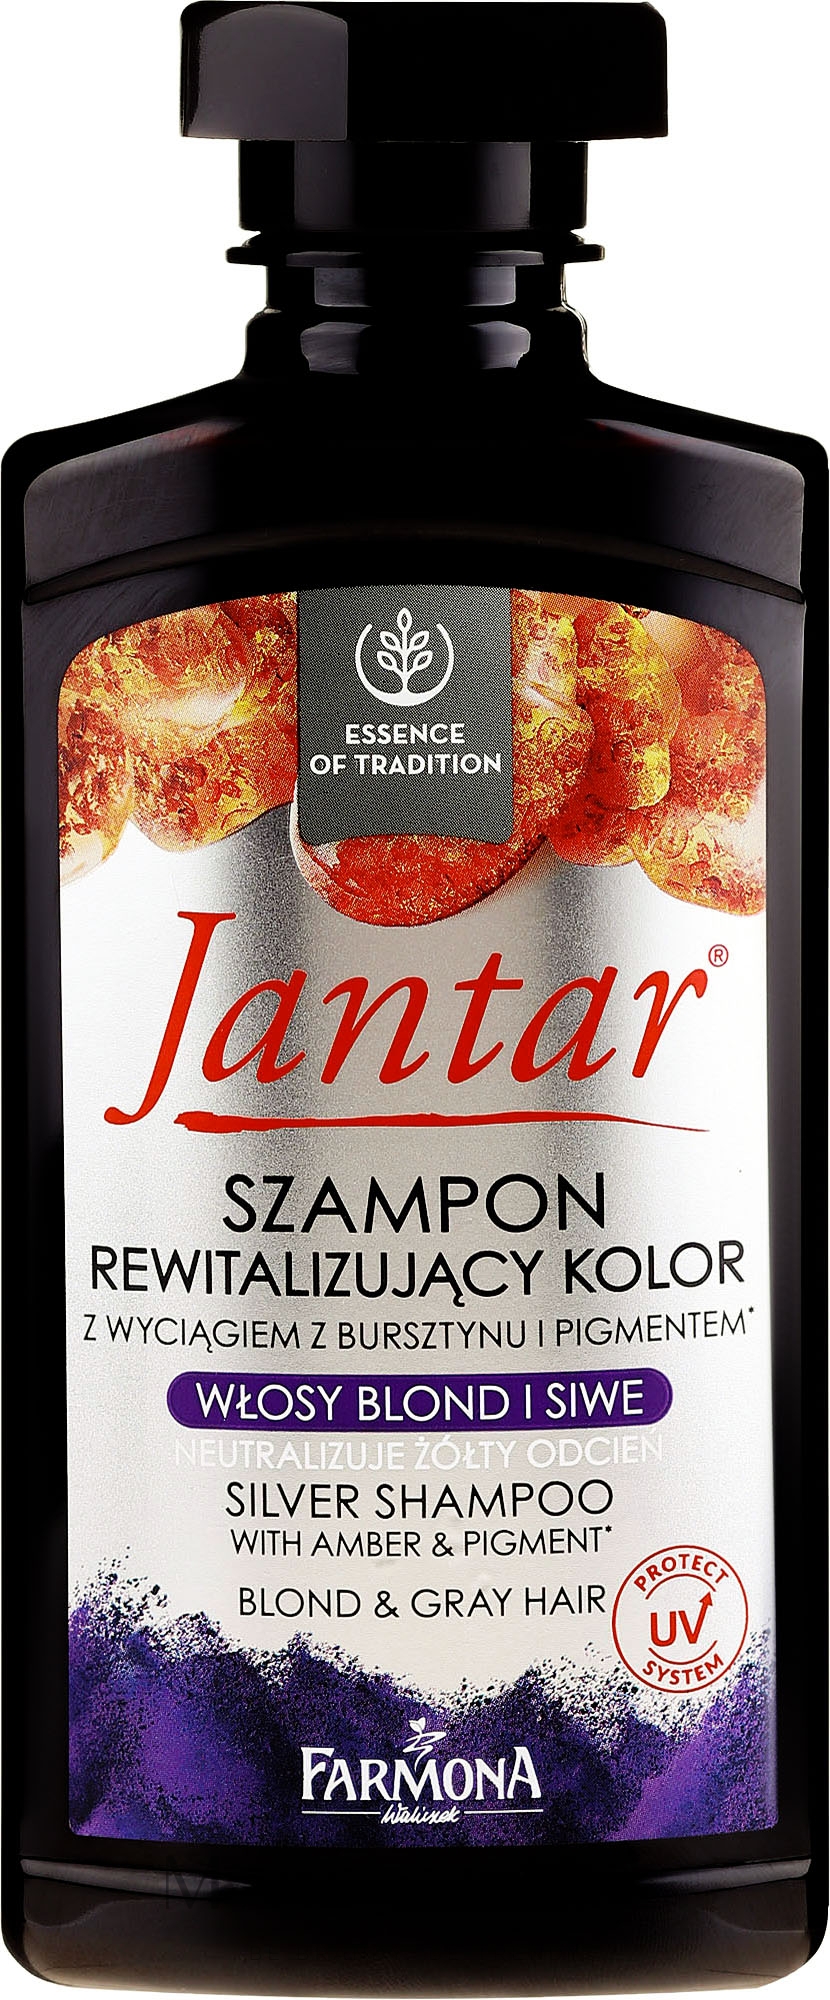 szampon do włosów farbowanych jantar